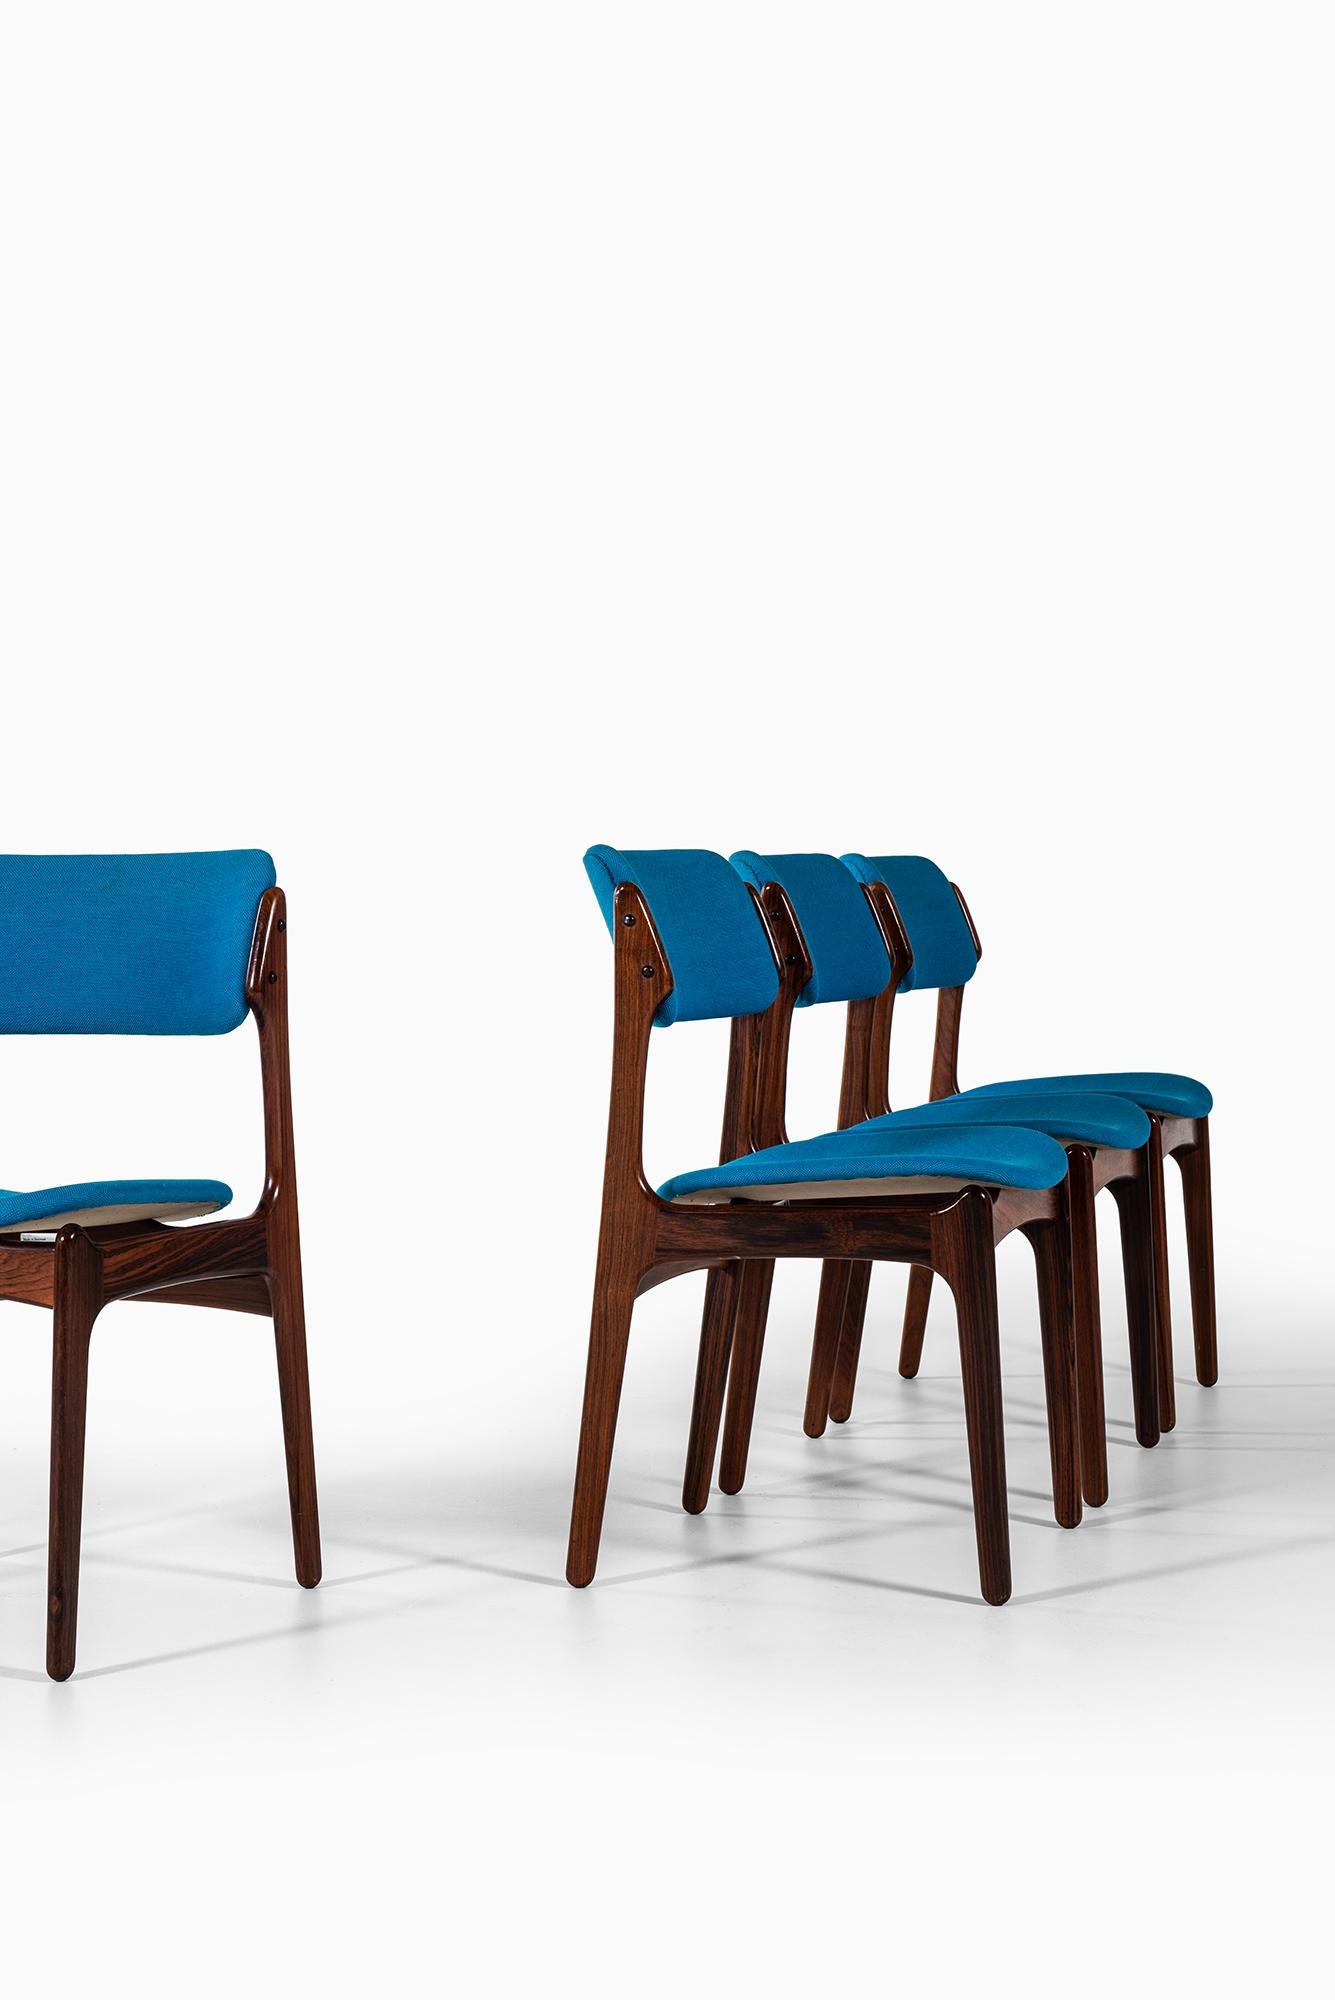 Seltener Satz von sechs Esszimmerstühlen, Modell OD-49, entworfen von Erik Buck. Produziert von Oddense maskinsnedkeri A/S in Dänemark.